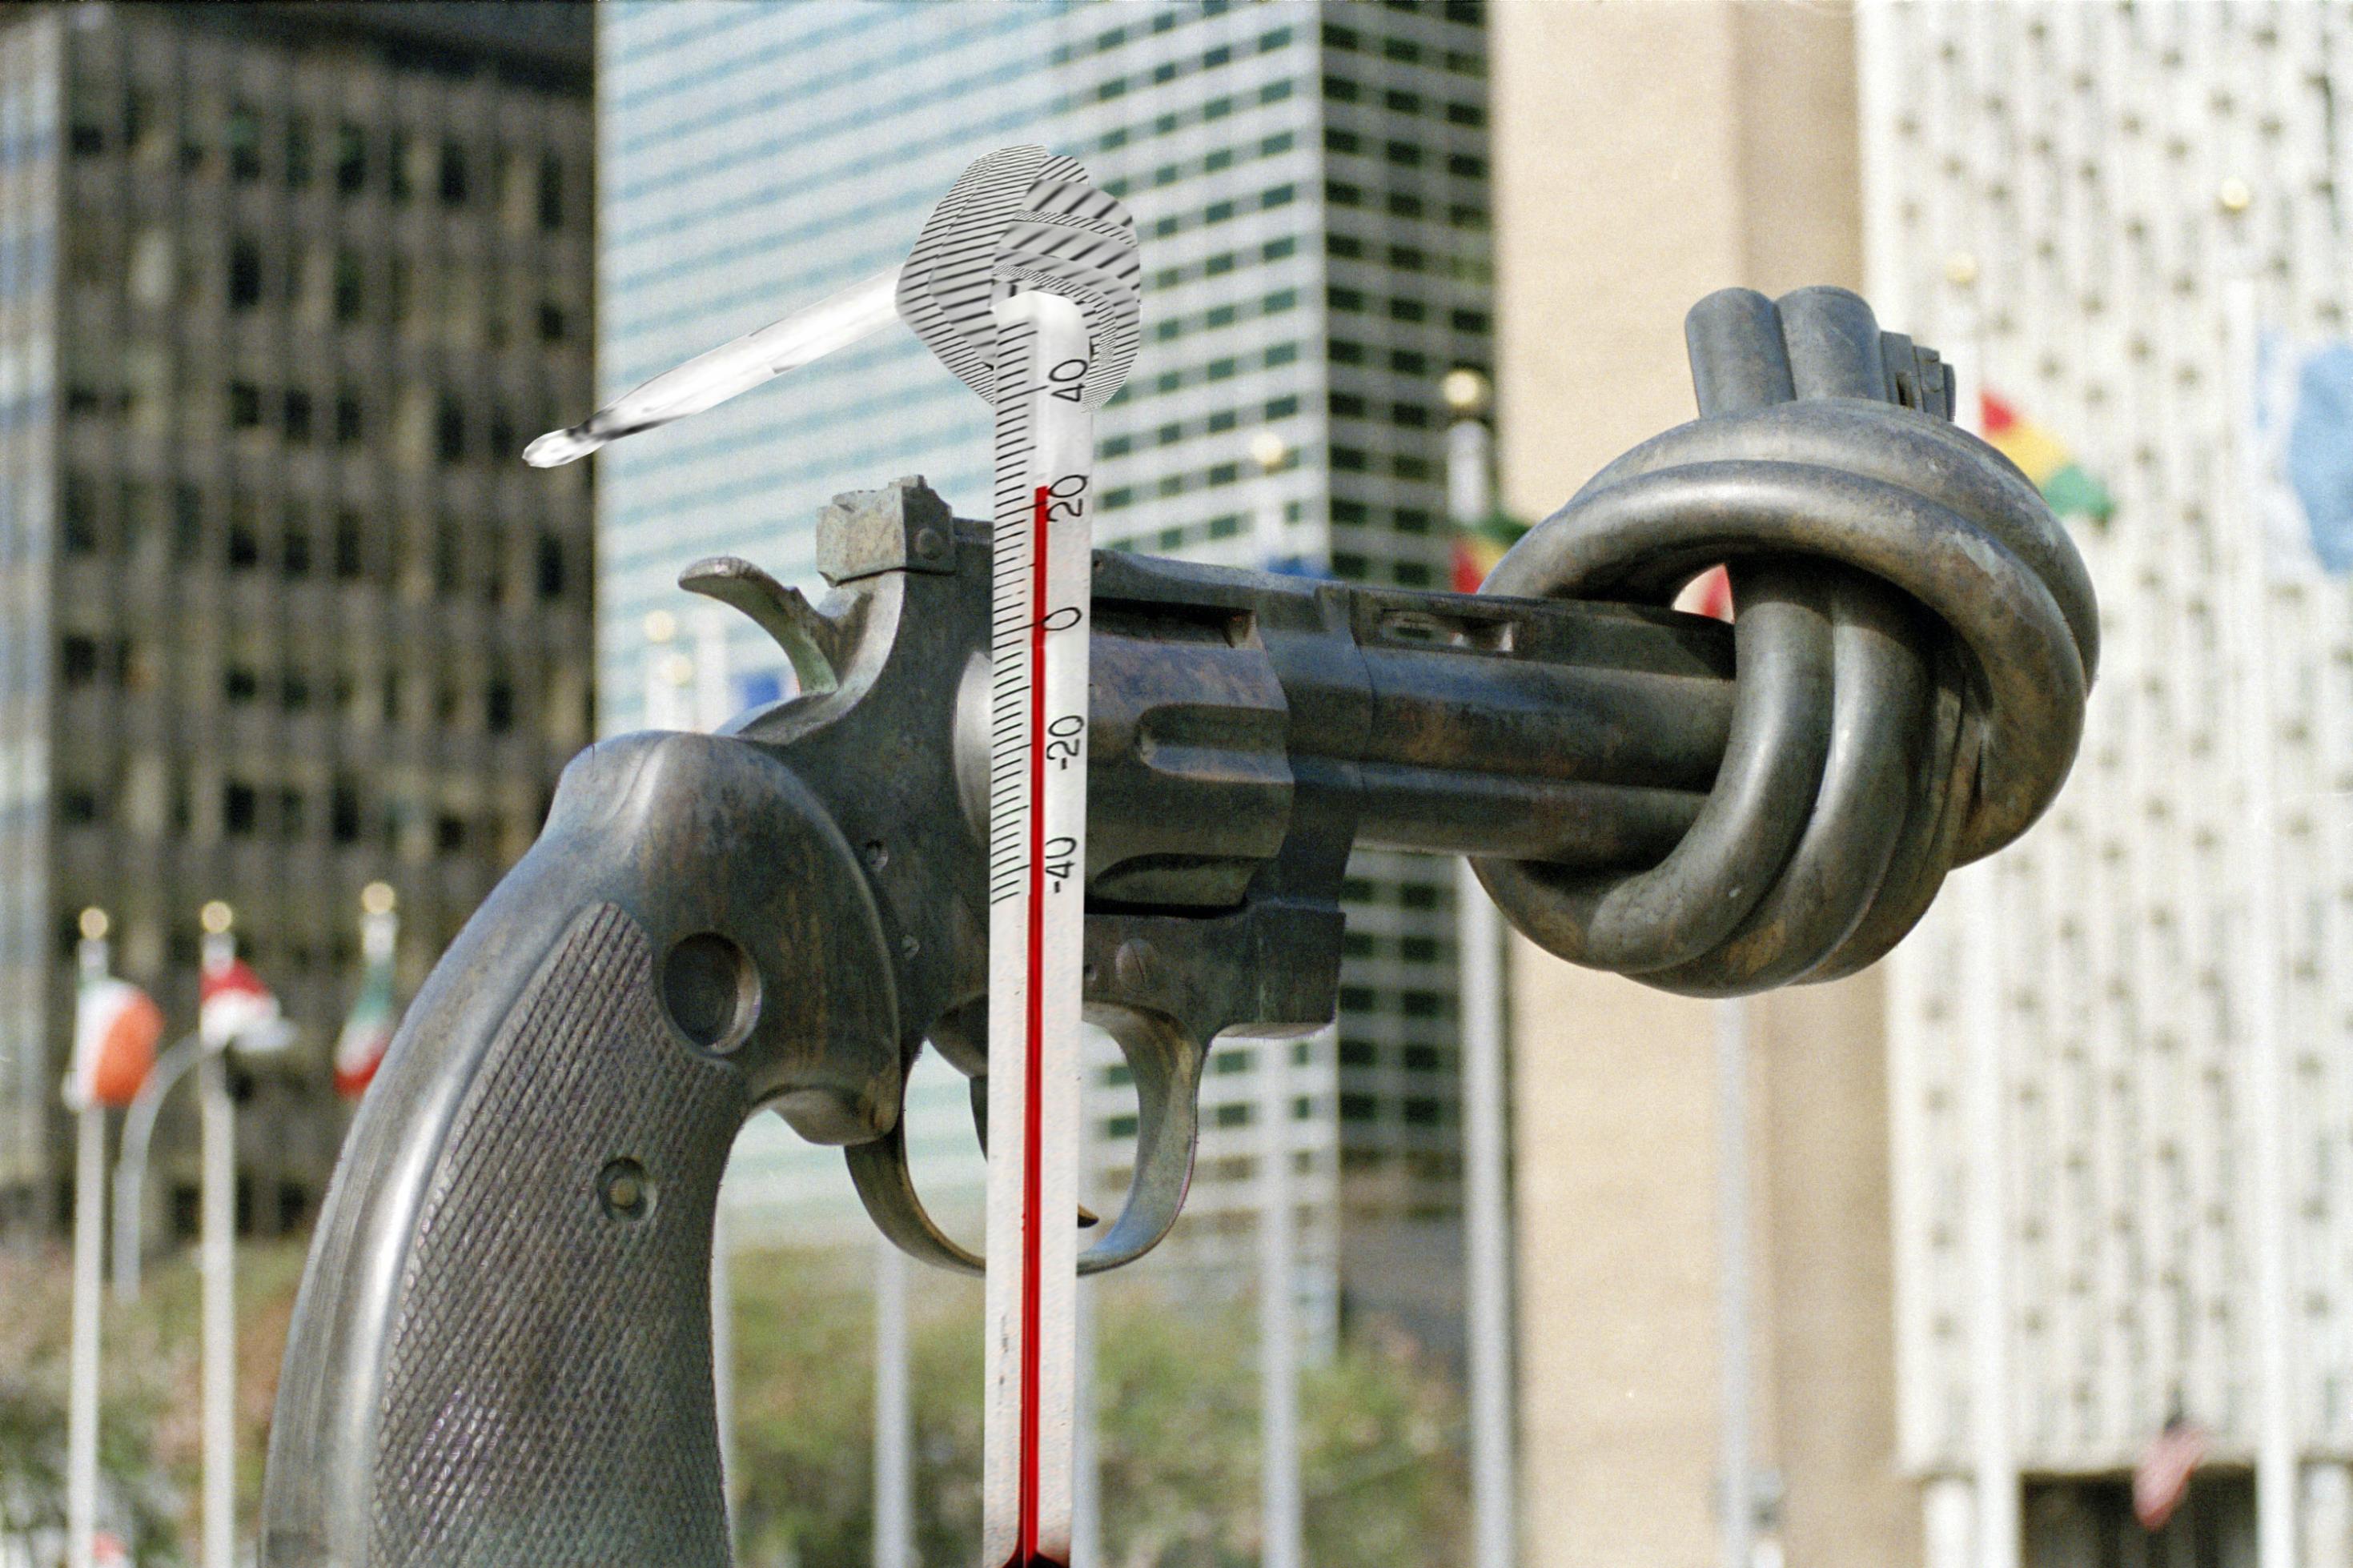 Eine Collage auf der Basis eines Fotos, das vor dem Hauptquartier dr Vereinten Nationen in New York aufgenommen wurde. Darauf wurde die Grafik eines verknoteten Thermometers appliziert. – 
Der Revolver mit dem Knoten im Lauf ist ein Wahrzeichen vor dem UN-Gebäude in Manhattan. Steht dort bald auch die Statue eines Thermometers mit einen Knoten?